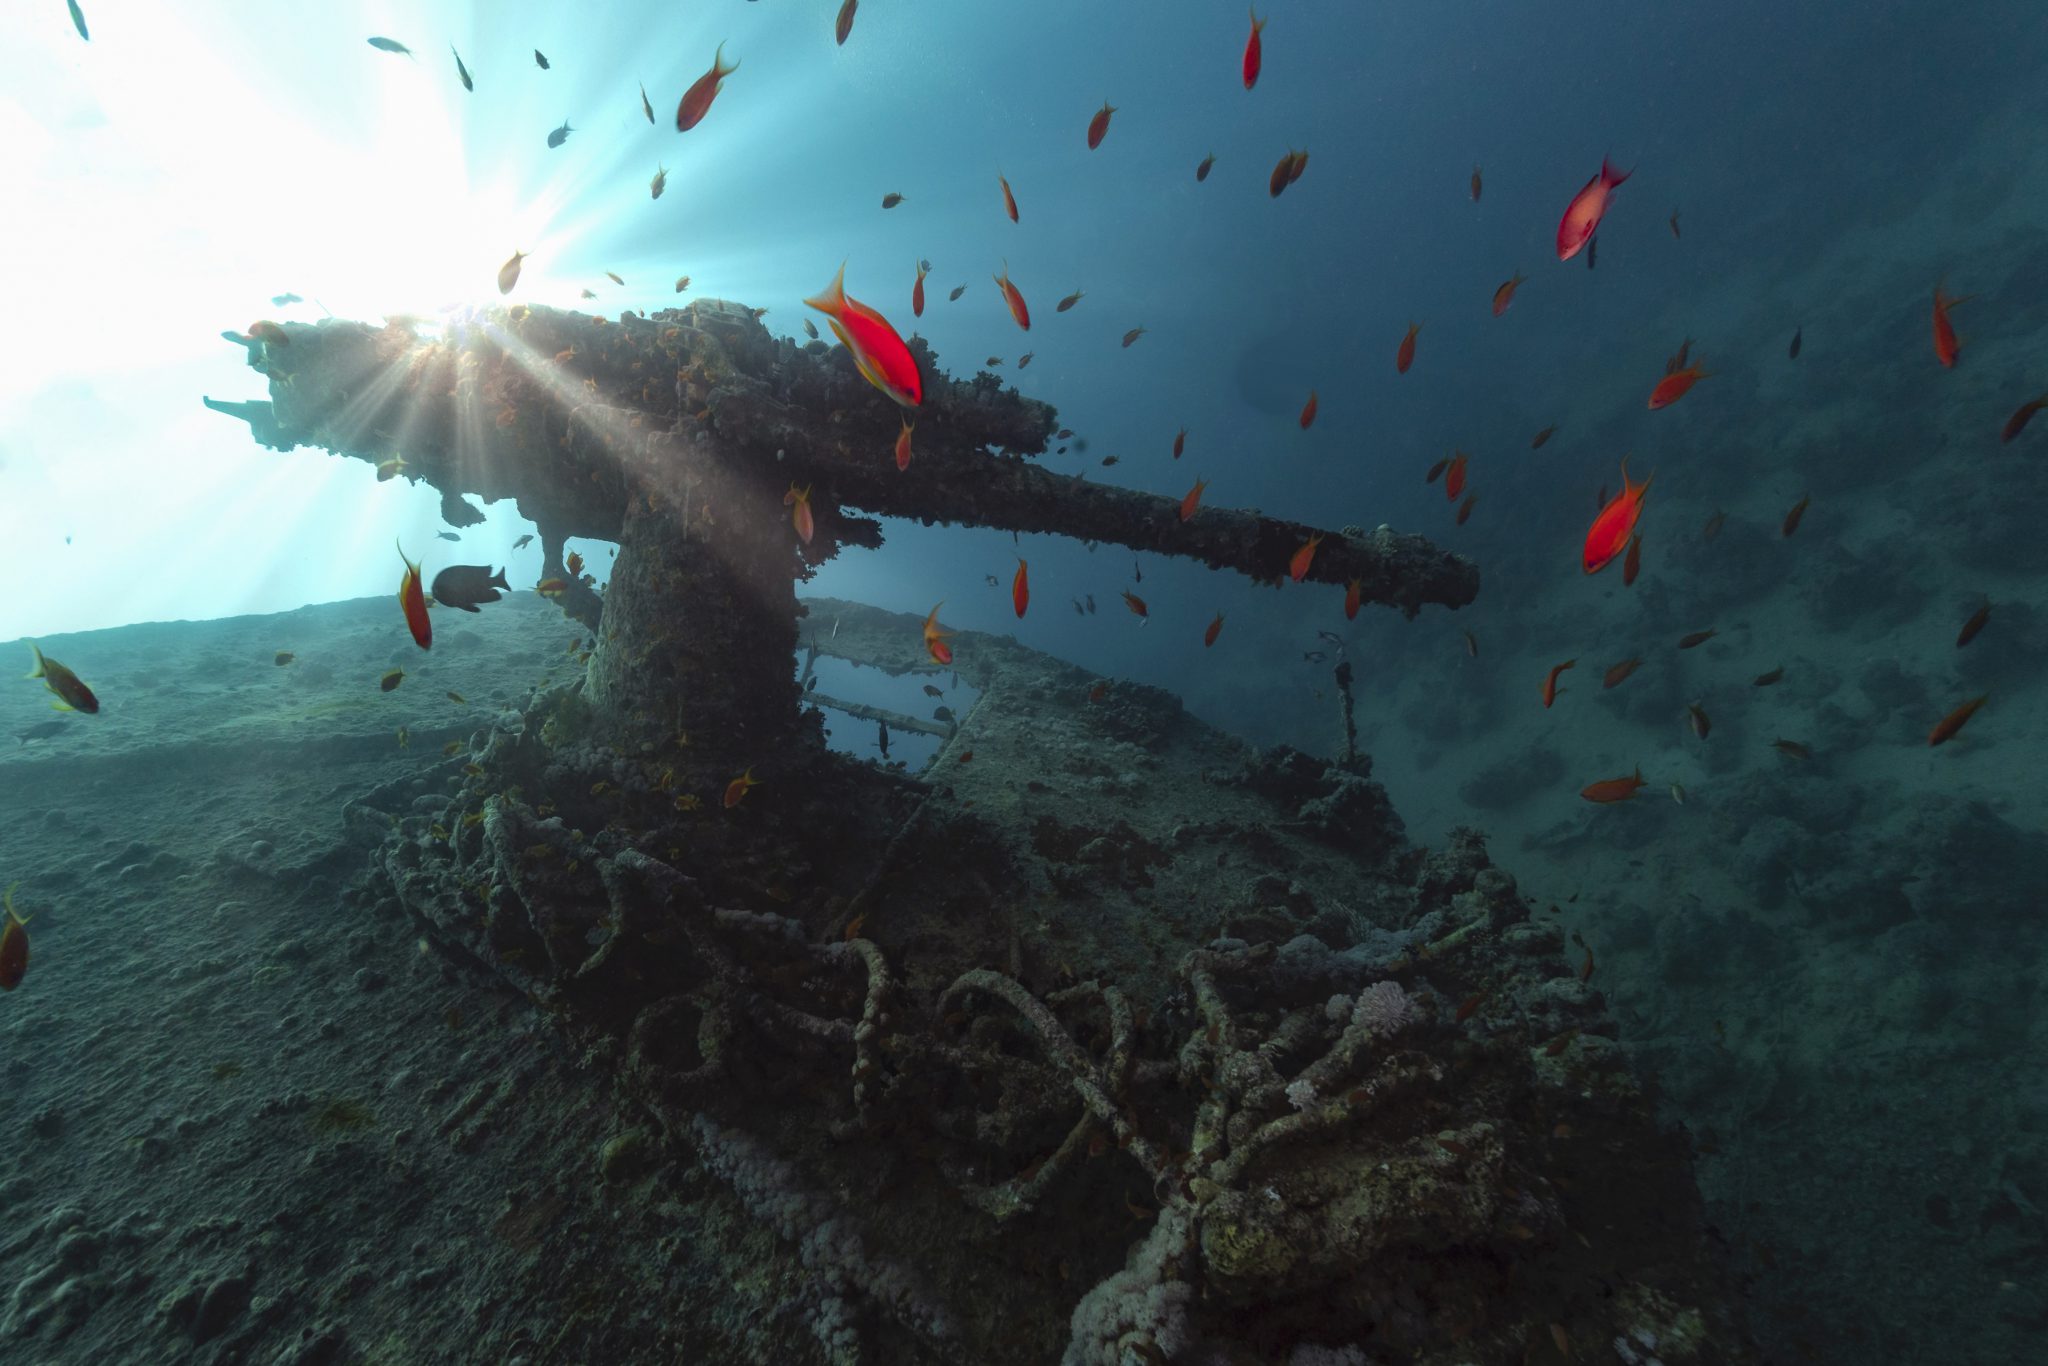 ss thistlegorm - Cousteau's favorite dive